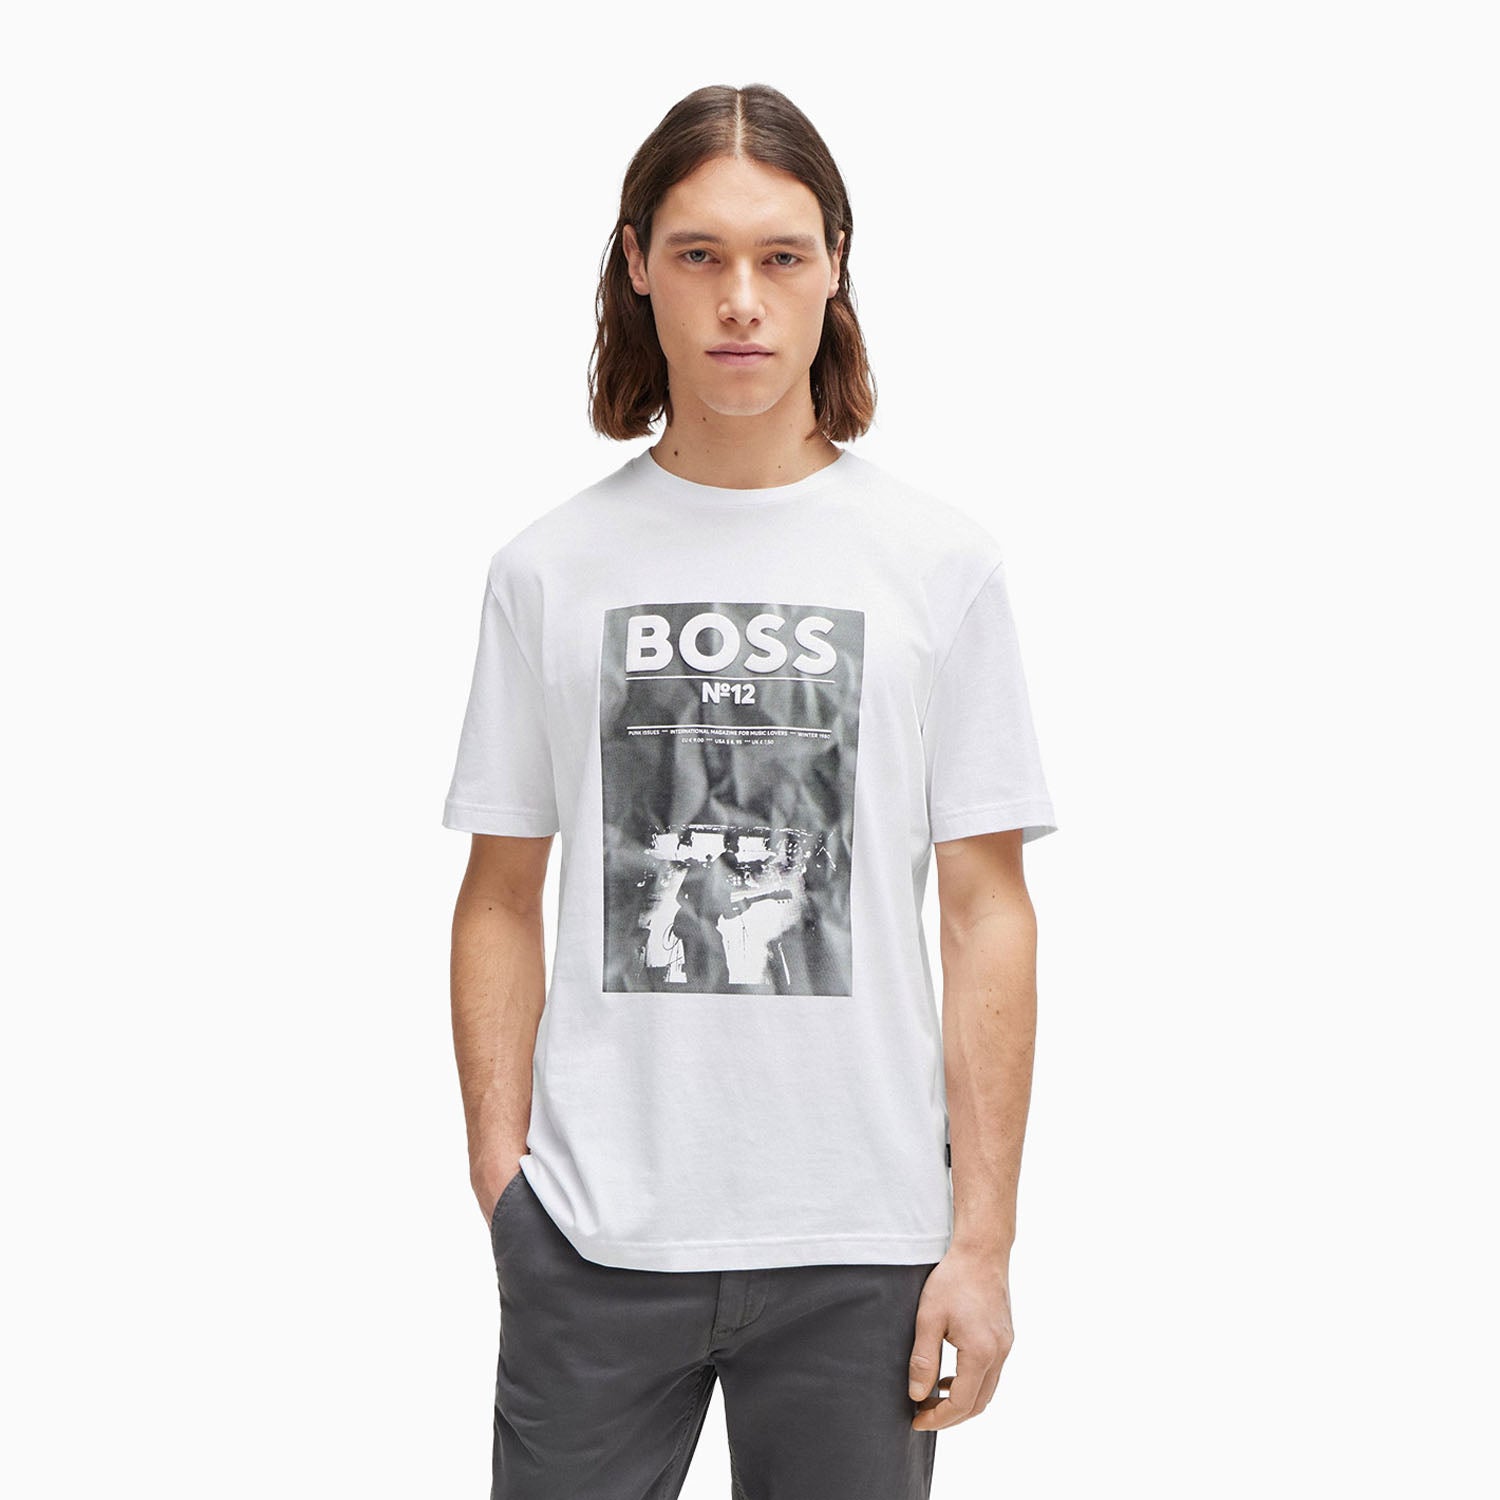 hugo-boss-mens-regular-fit-t-shirt-in-cotton-with-seasonal-artwork-50515829-101